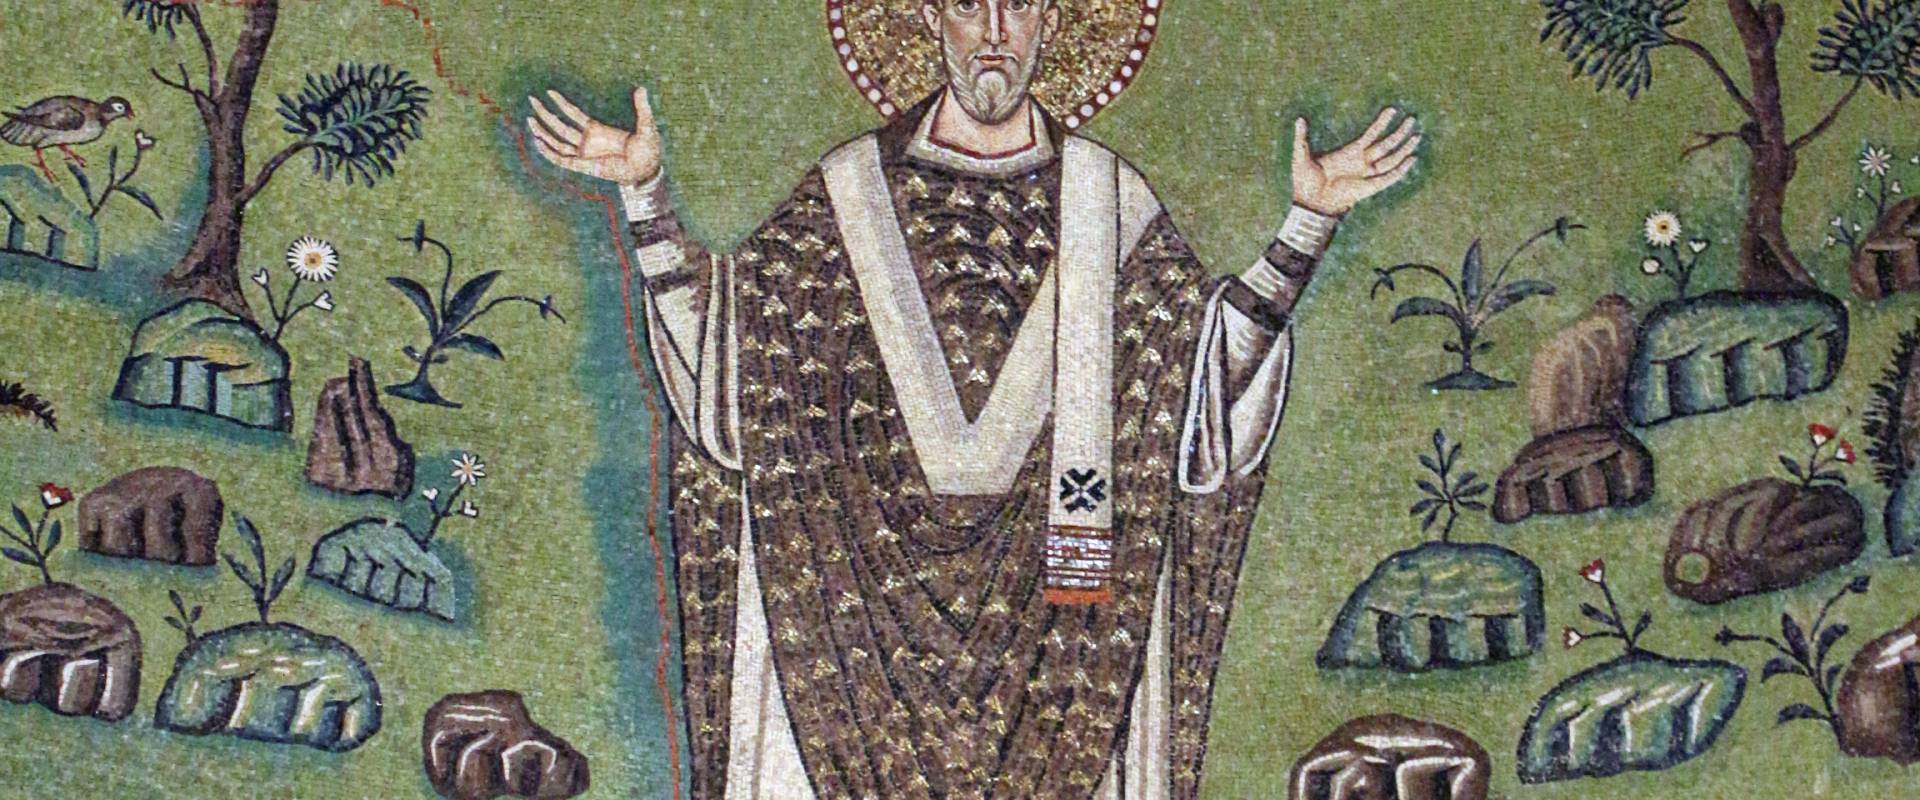 Sant'apollinare in classe, mosaici del catino, trasfigurazione simbolica, VI secolo, 15 s. apollinare foto di Sailko